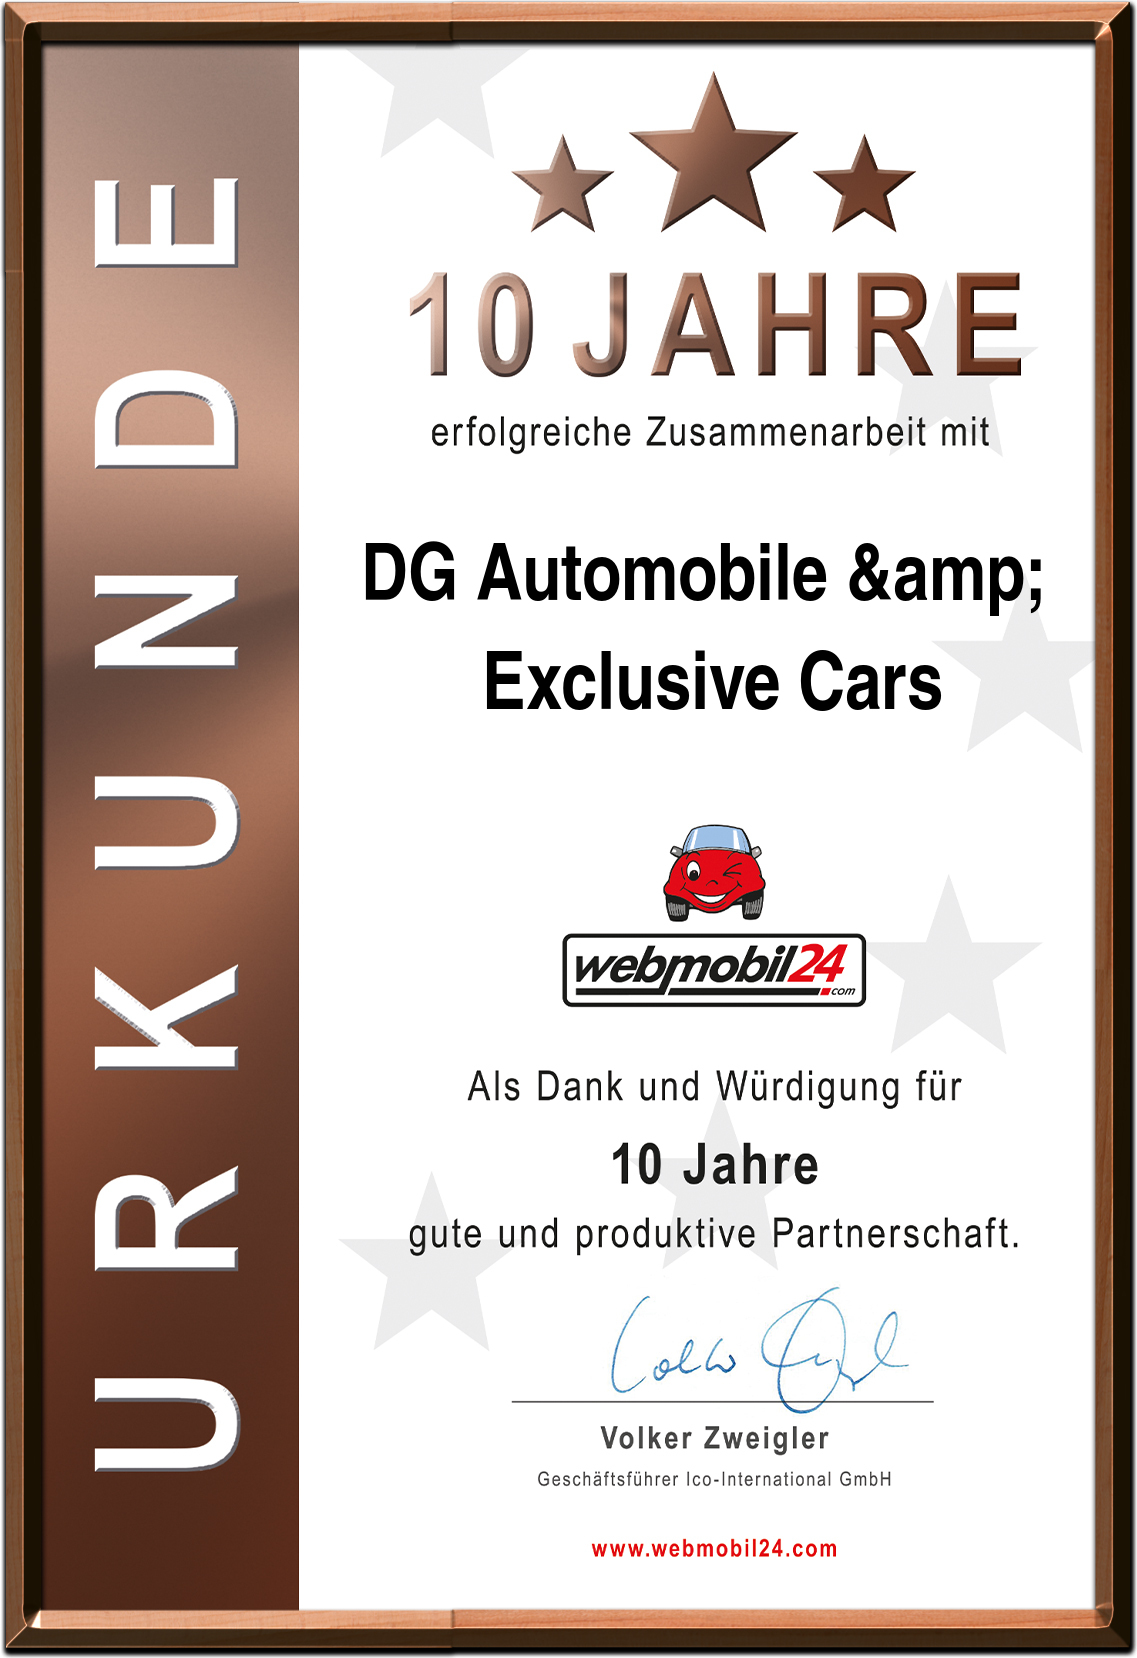 DG Automobile & Exclusive Cars